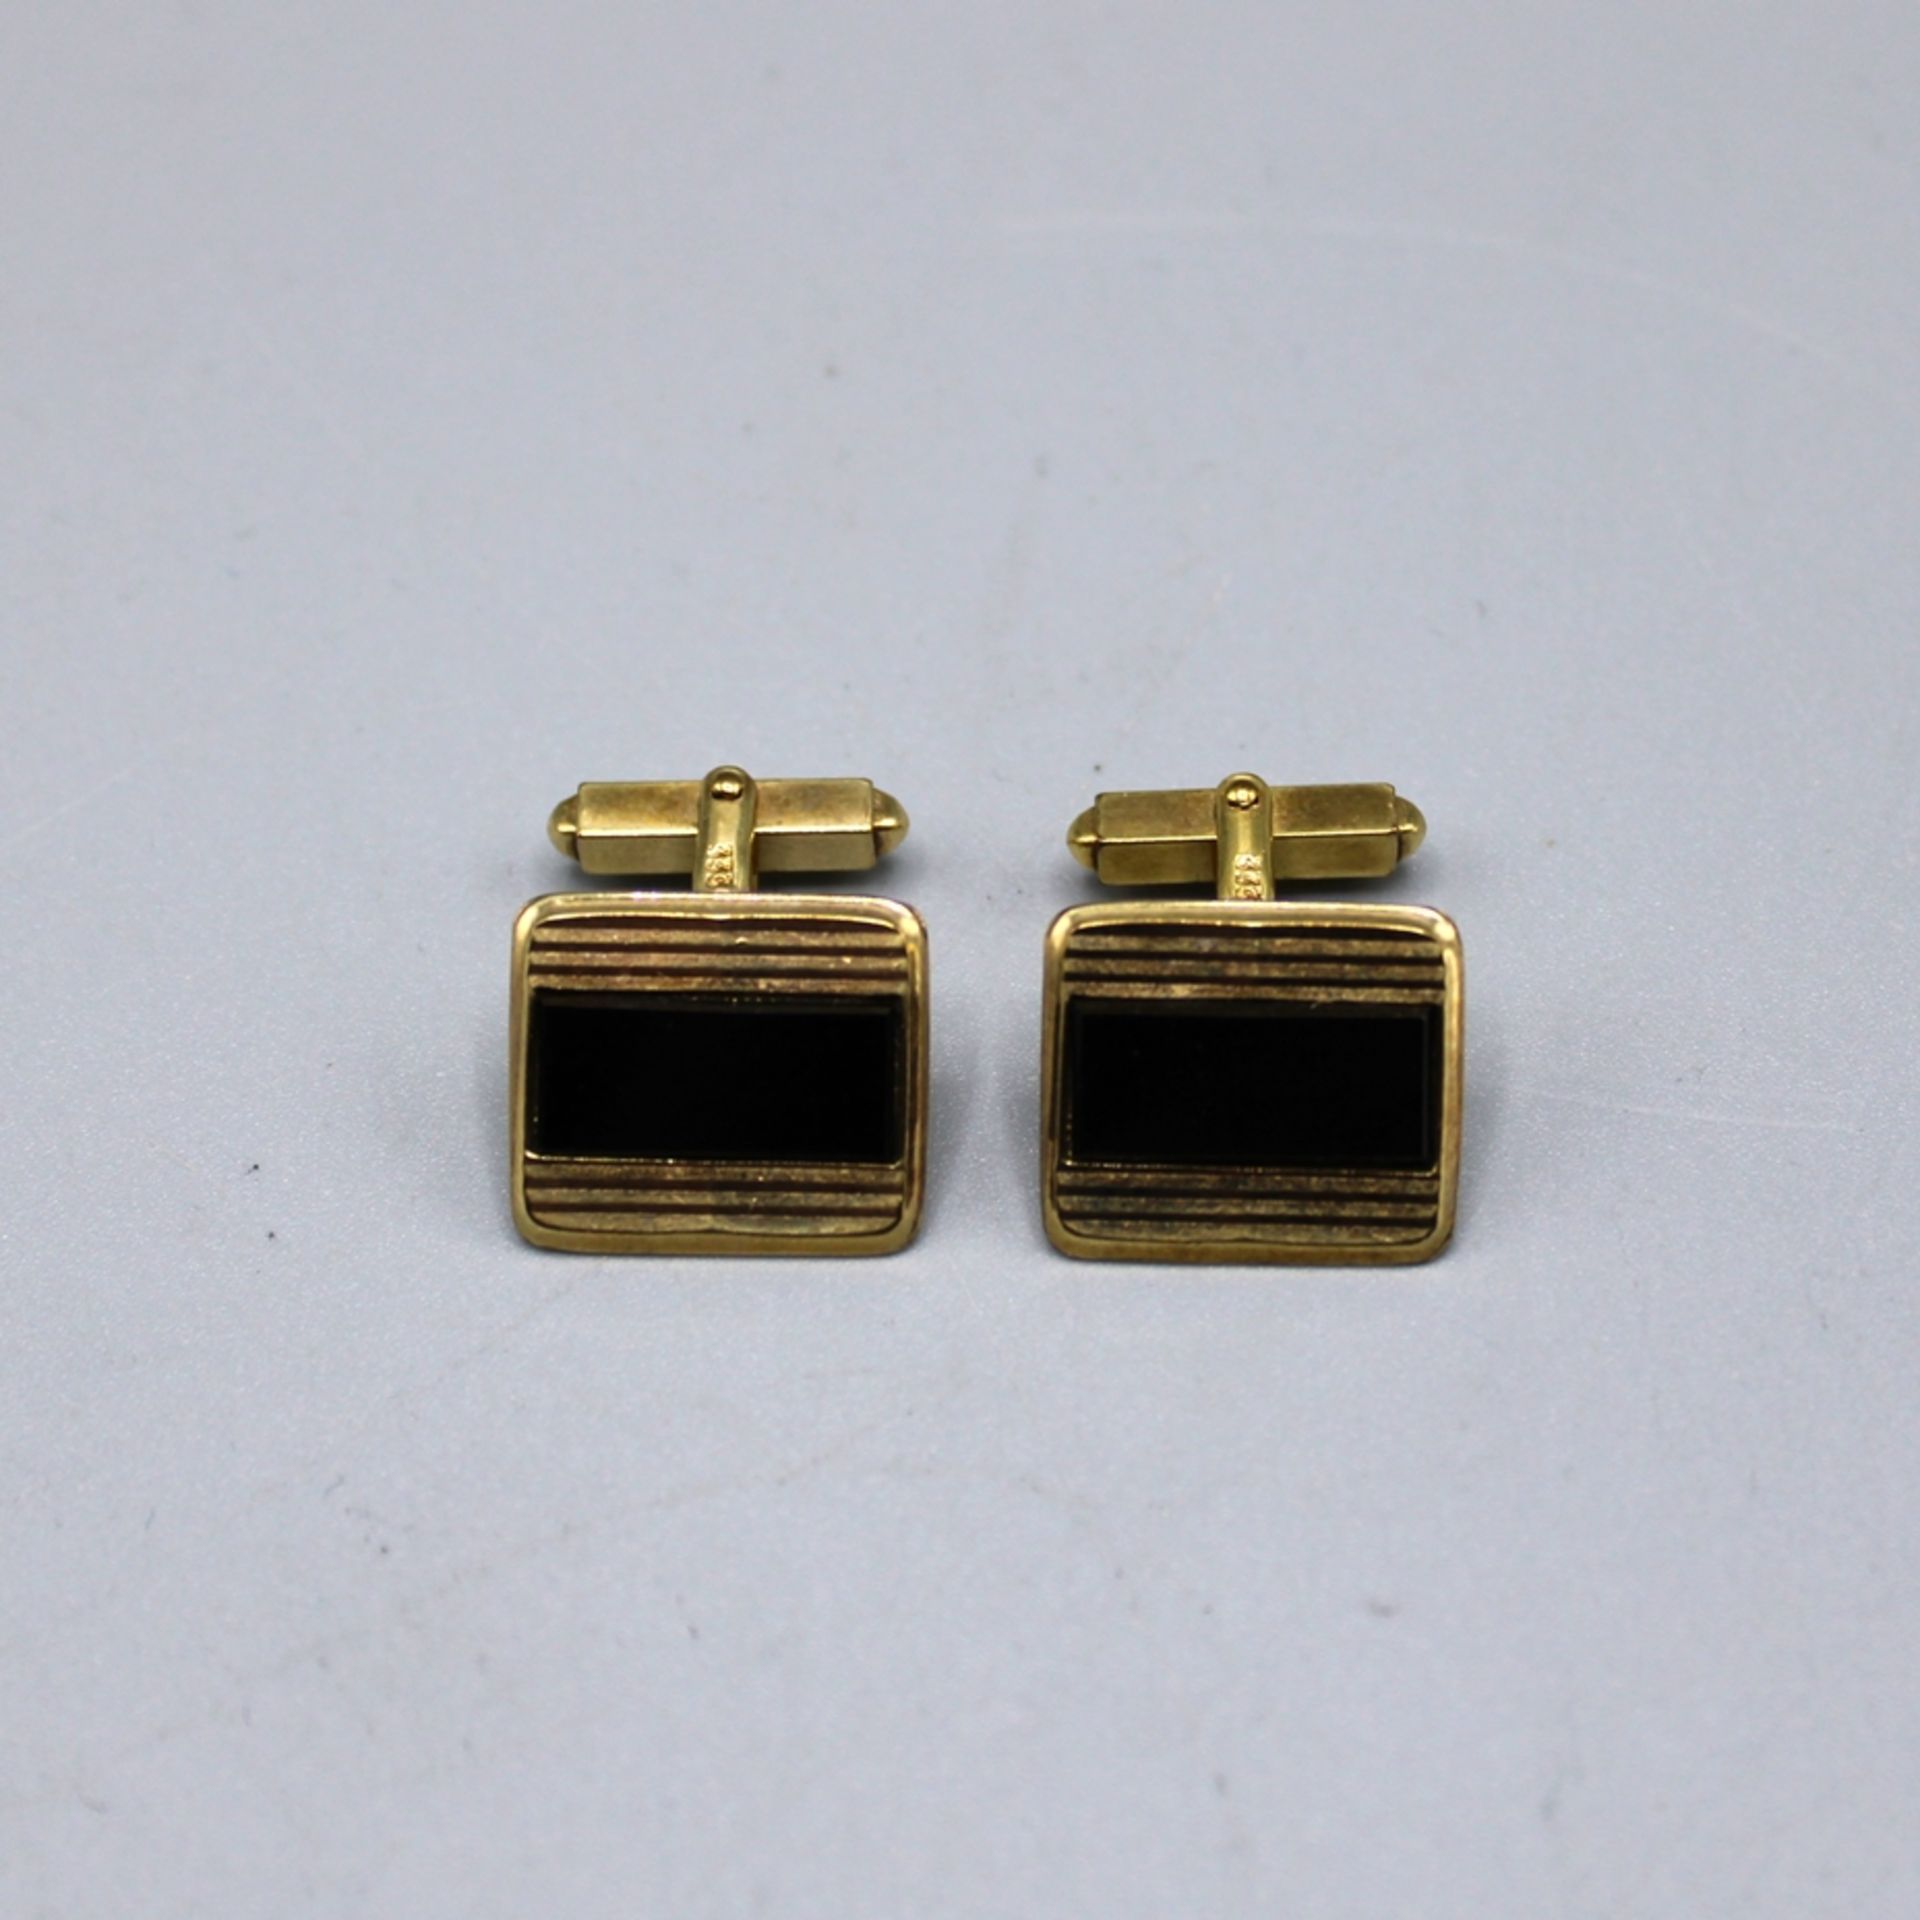 Onyx Manschettenknöpfe 333 Gold, ca. 17,5 x 15,1 mm, 8,7 g